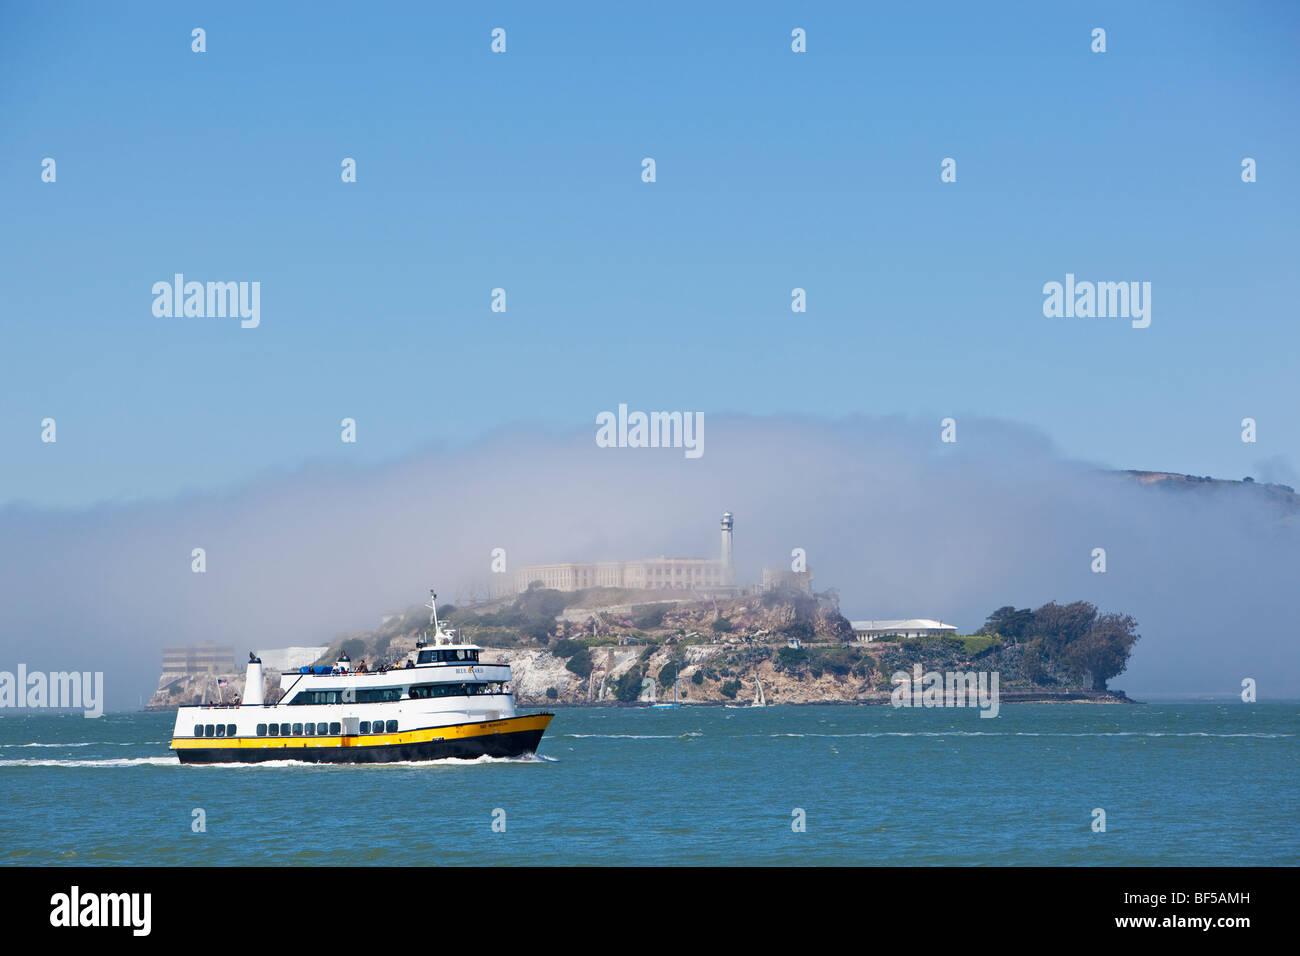 Ausflugsschiff mit Alcatraz und Nebel, ehemalige Gefängnisinsel, San Francisco, Kalifornien, USA, Amerika Stockfoto